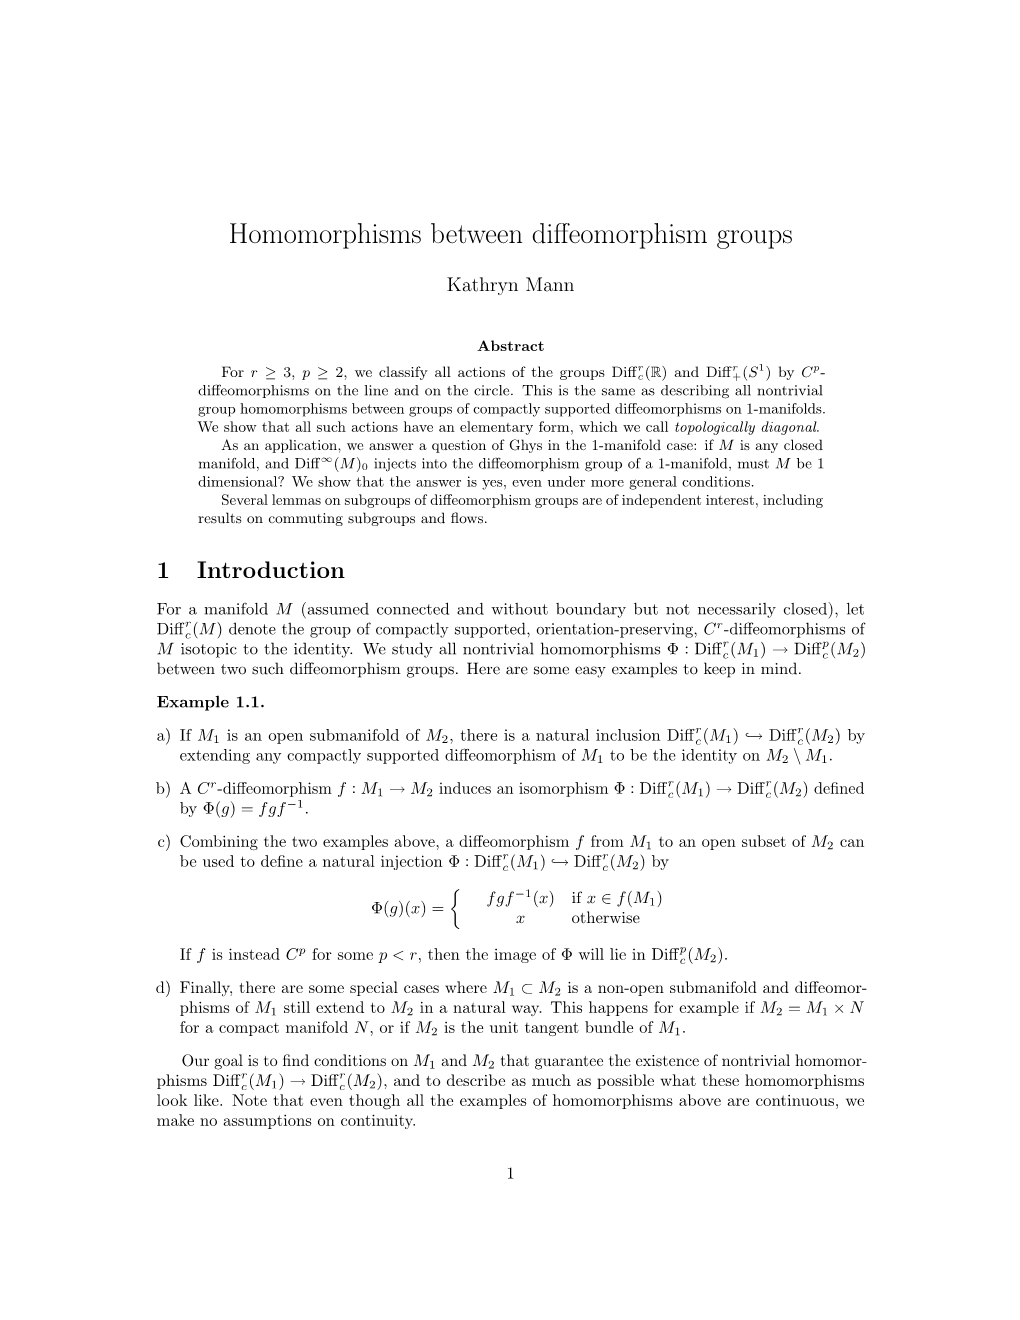 Homomorphisms Between Diffeomorphism Groups